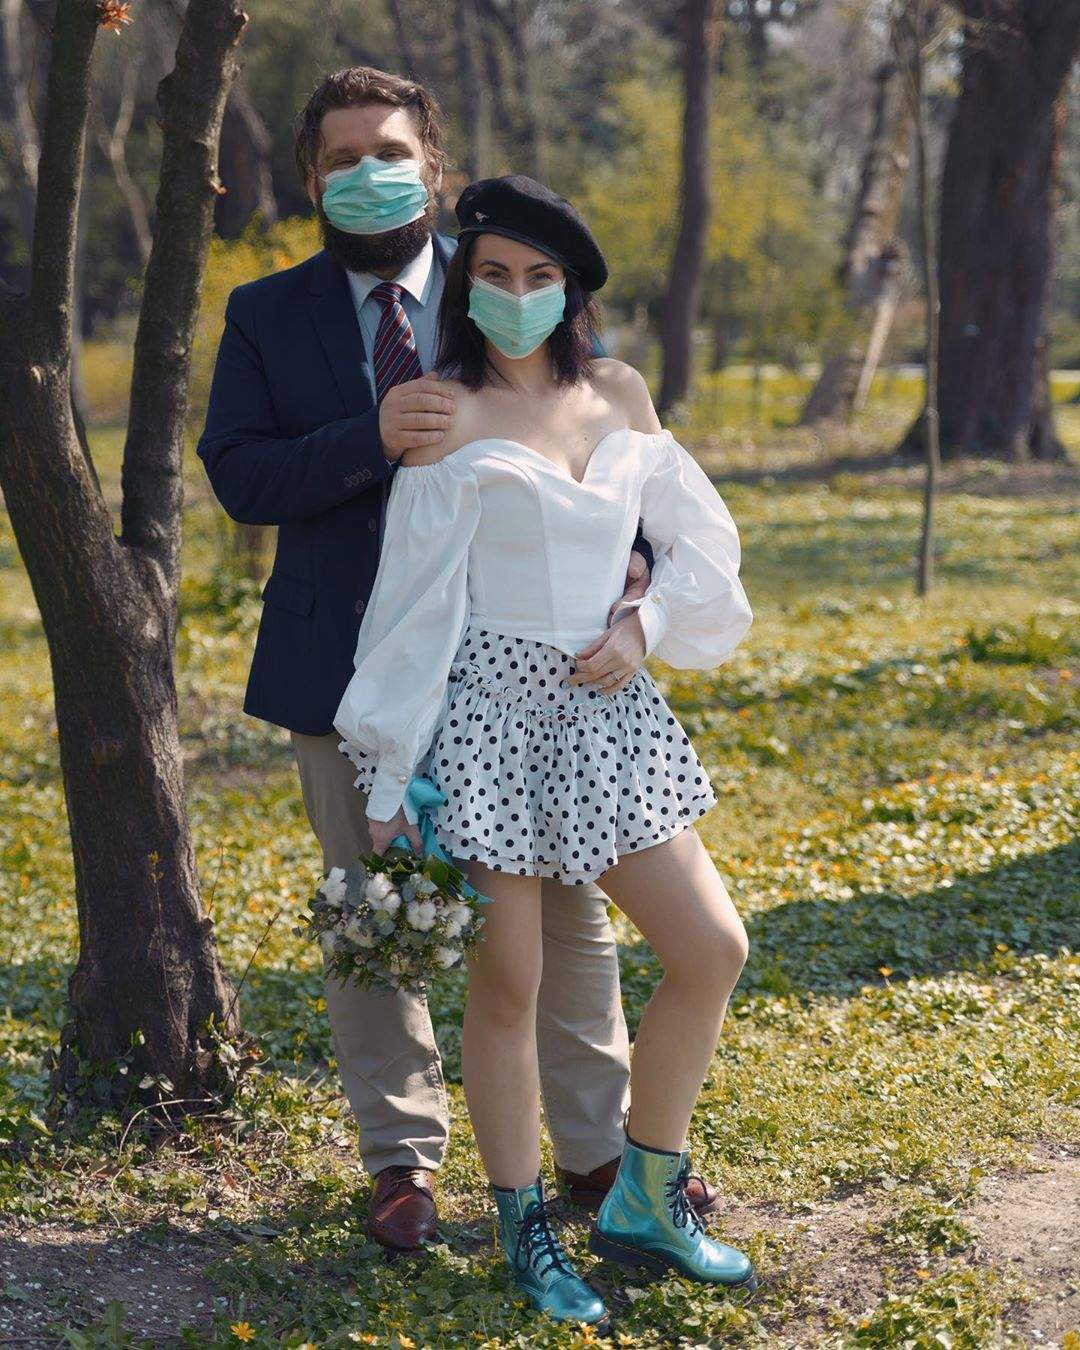 Totul pentru dragoste! O artistă a spus ”Da” cu masca pe față. Căsătorie în plină pandemie